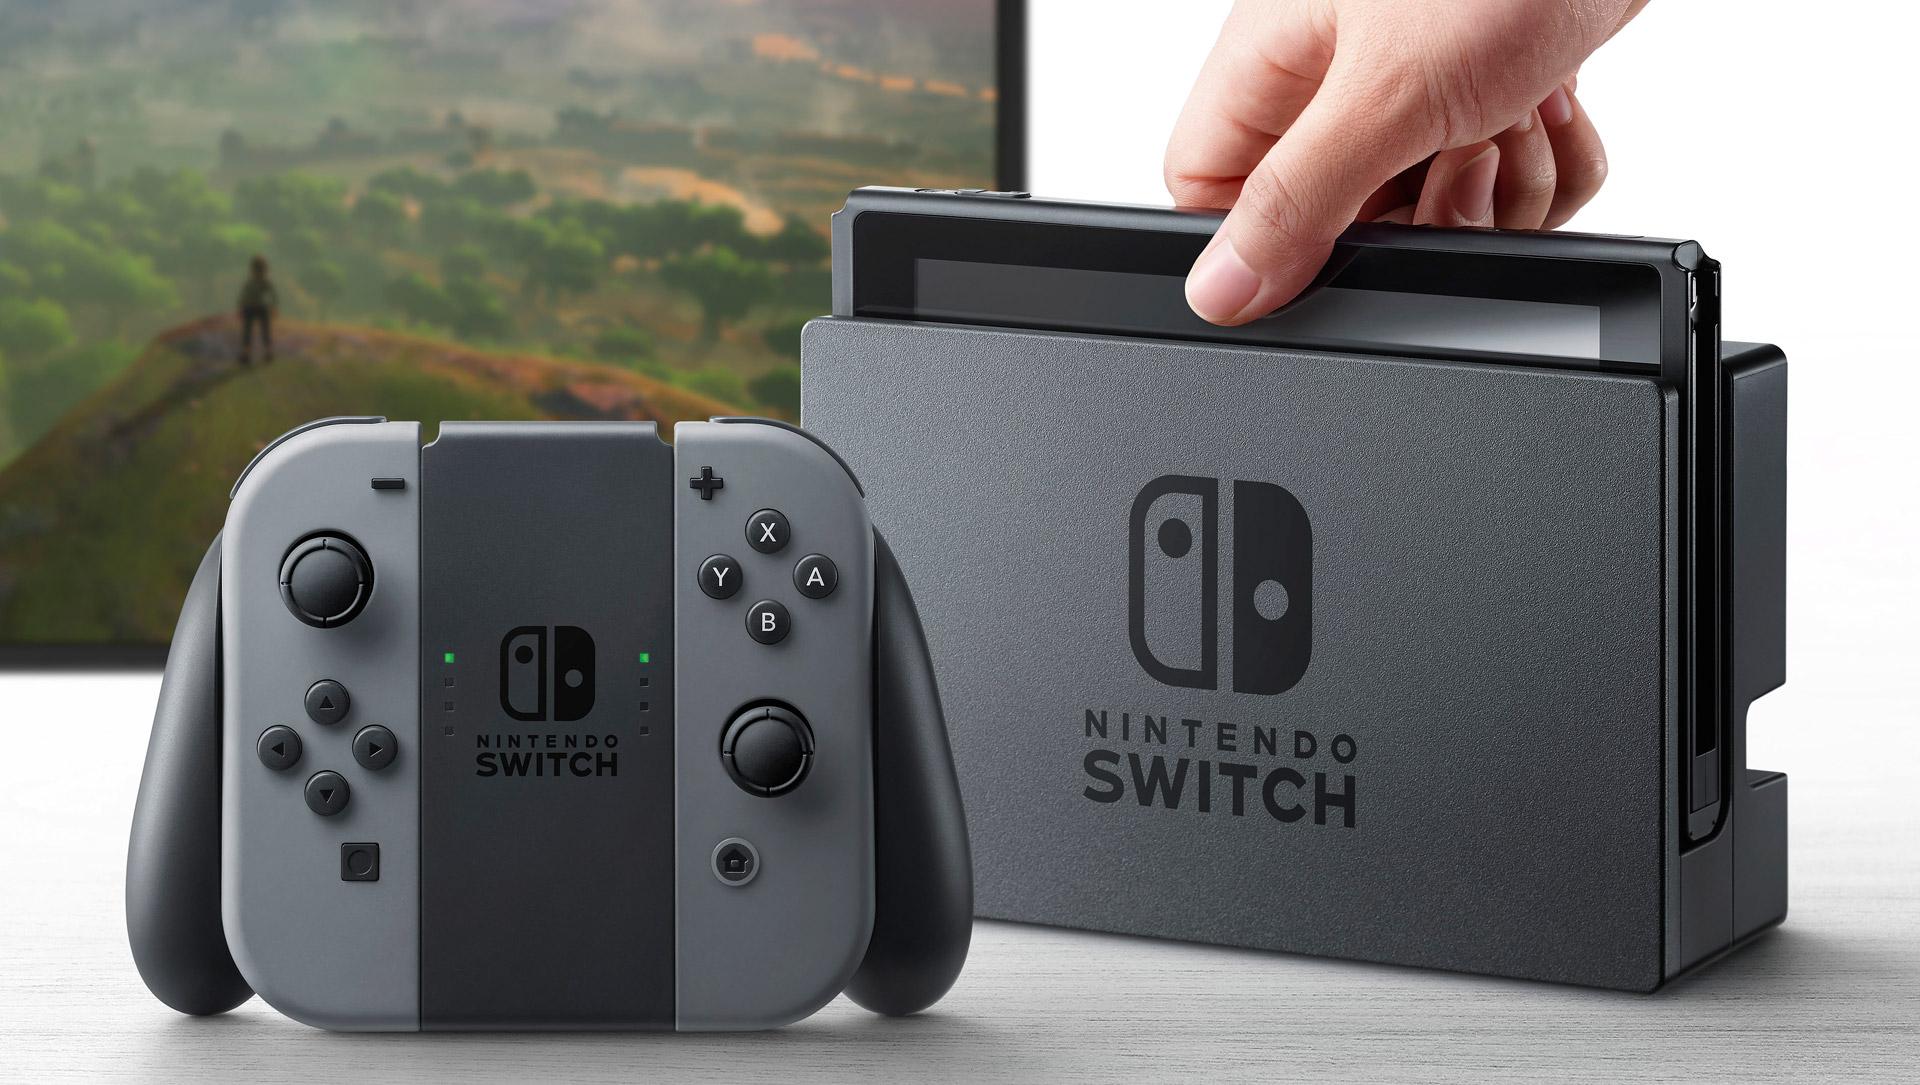 Nintendo Switch saldrá a la venta el 3 de marzo a 299.99 dólares